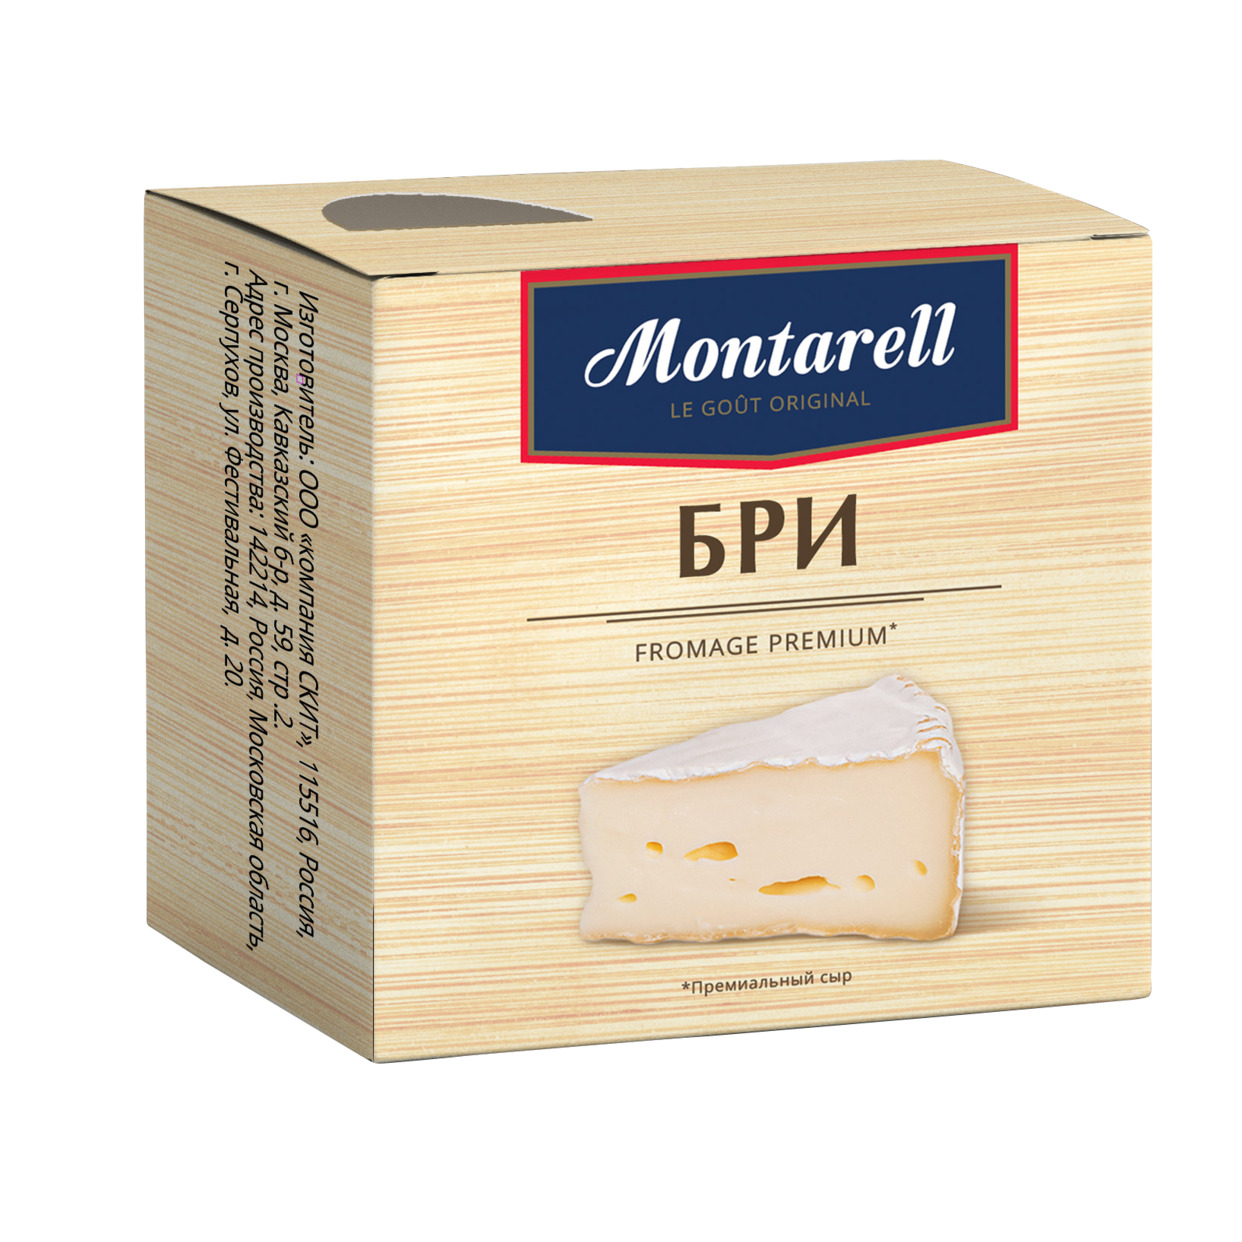 БЗМЖ Сыр с белой плесенью Бри Montarell с массовой долей жира в сухом веществе 55 % 0,125 кг по акции в Пятерочке